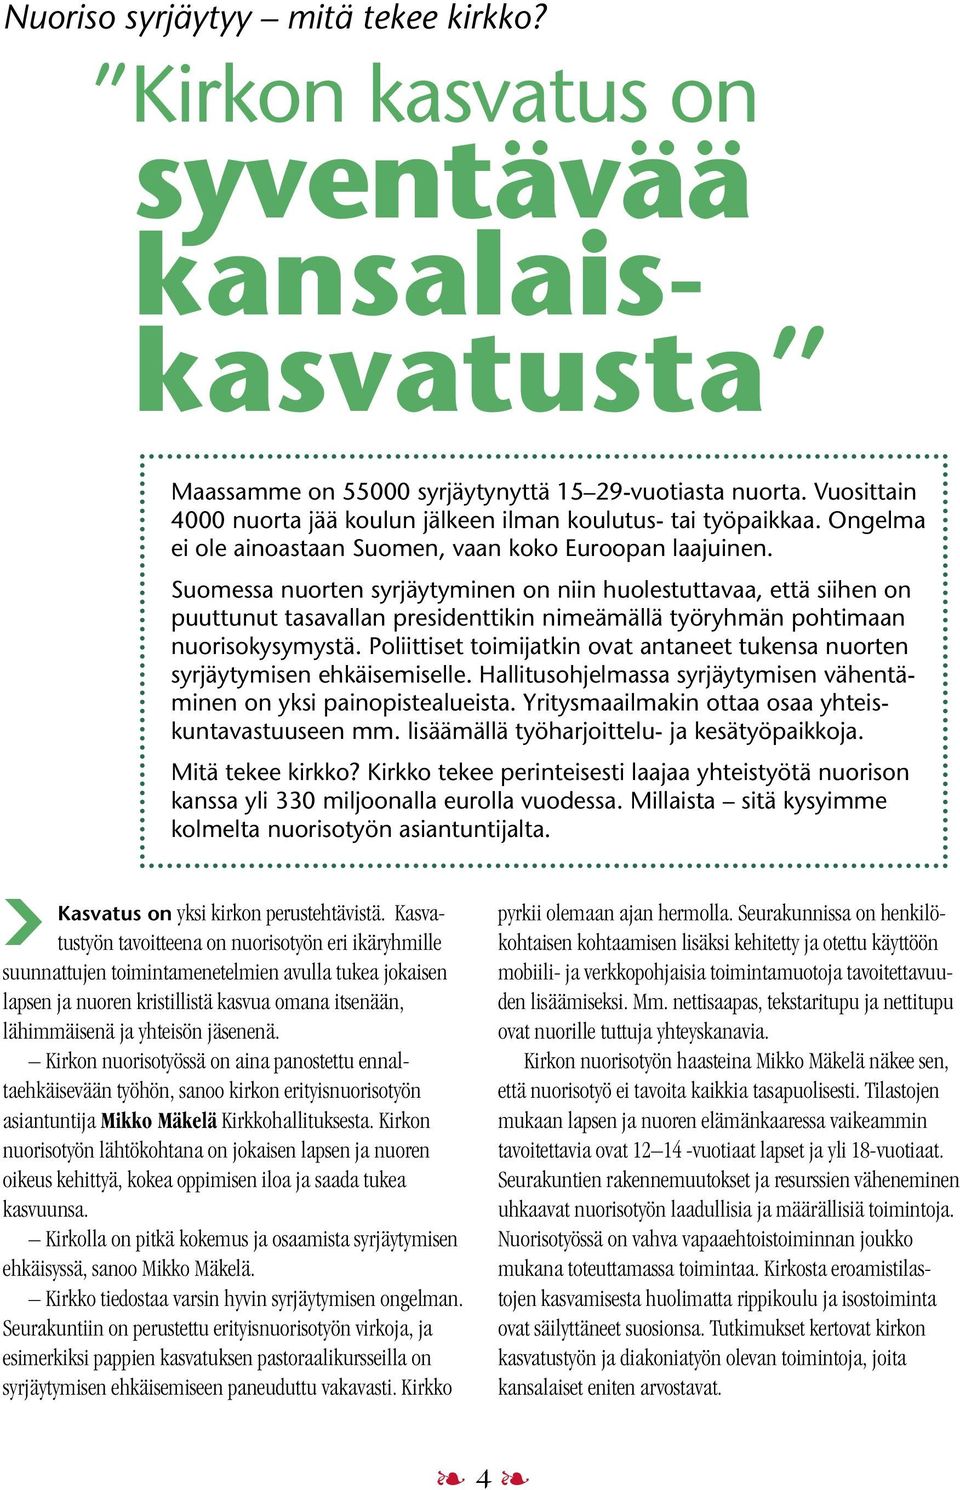 Suomessa nuorten syrjäytyminen on niin huolestuttavaa, että siihen on puuttunut tasavallan presidenttikin nimeämällä työryhmän pohtimaan nuorisokysymystä.